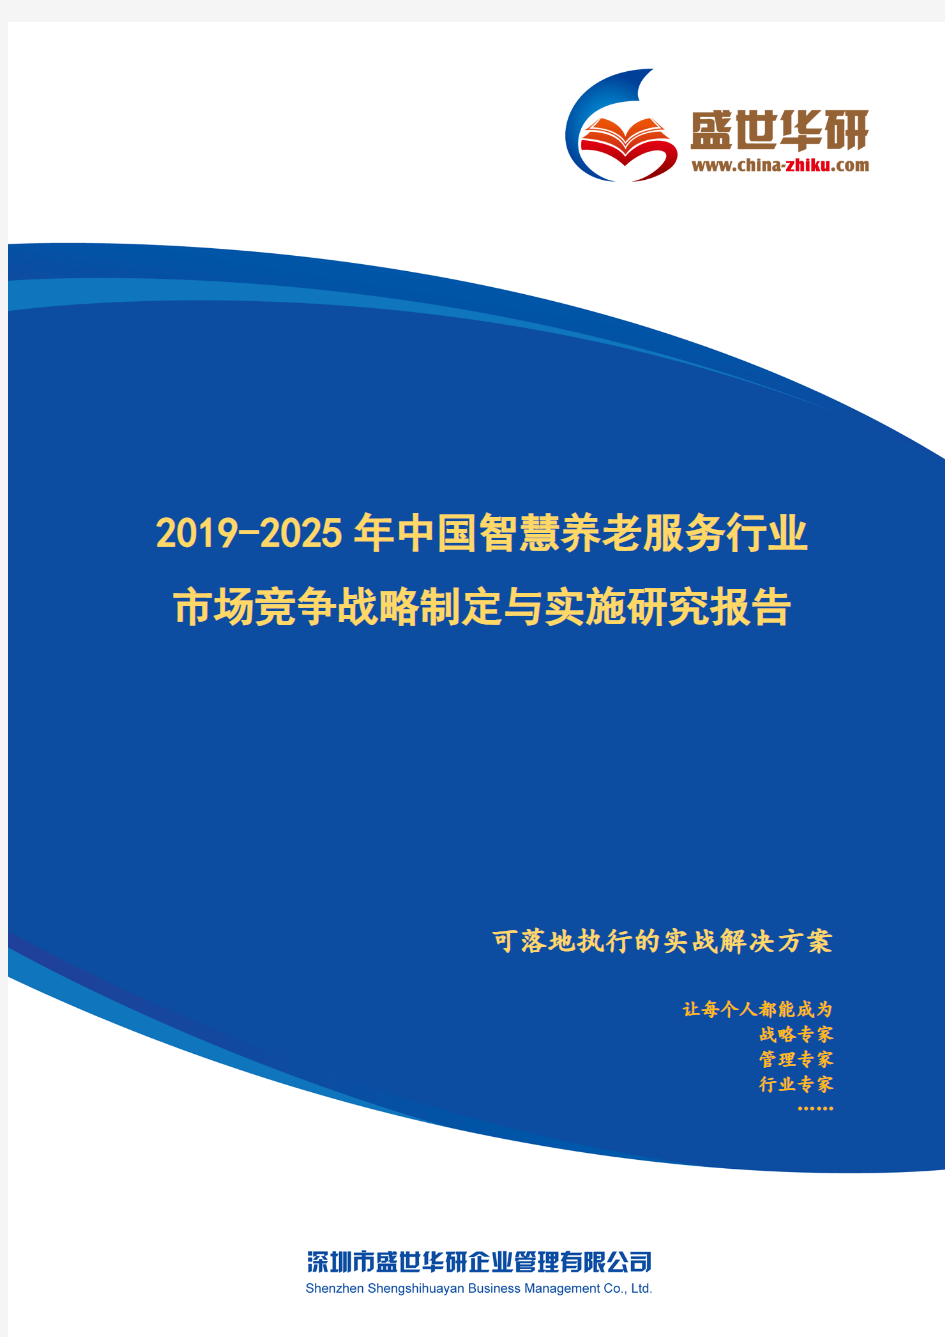 【完整版】2019-2025年中国智慧养老服务行业市场竞争战略制定与实施研究报告